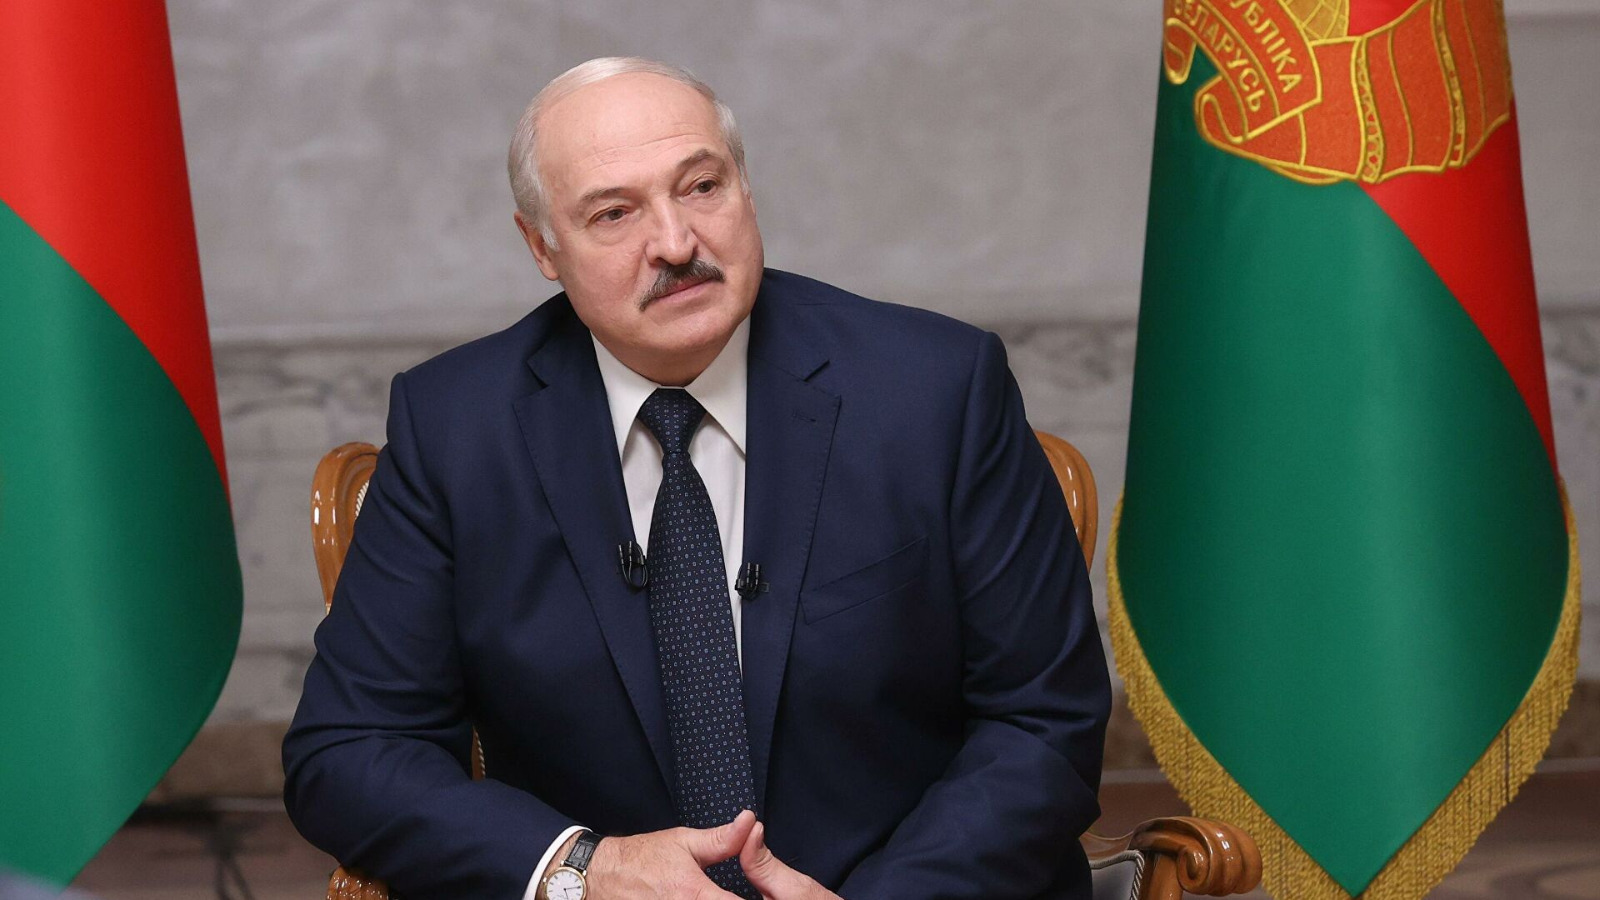 Подразделения ЧВК "Вагнер" приняли предложение Лукашенко об остановке движения